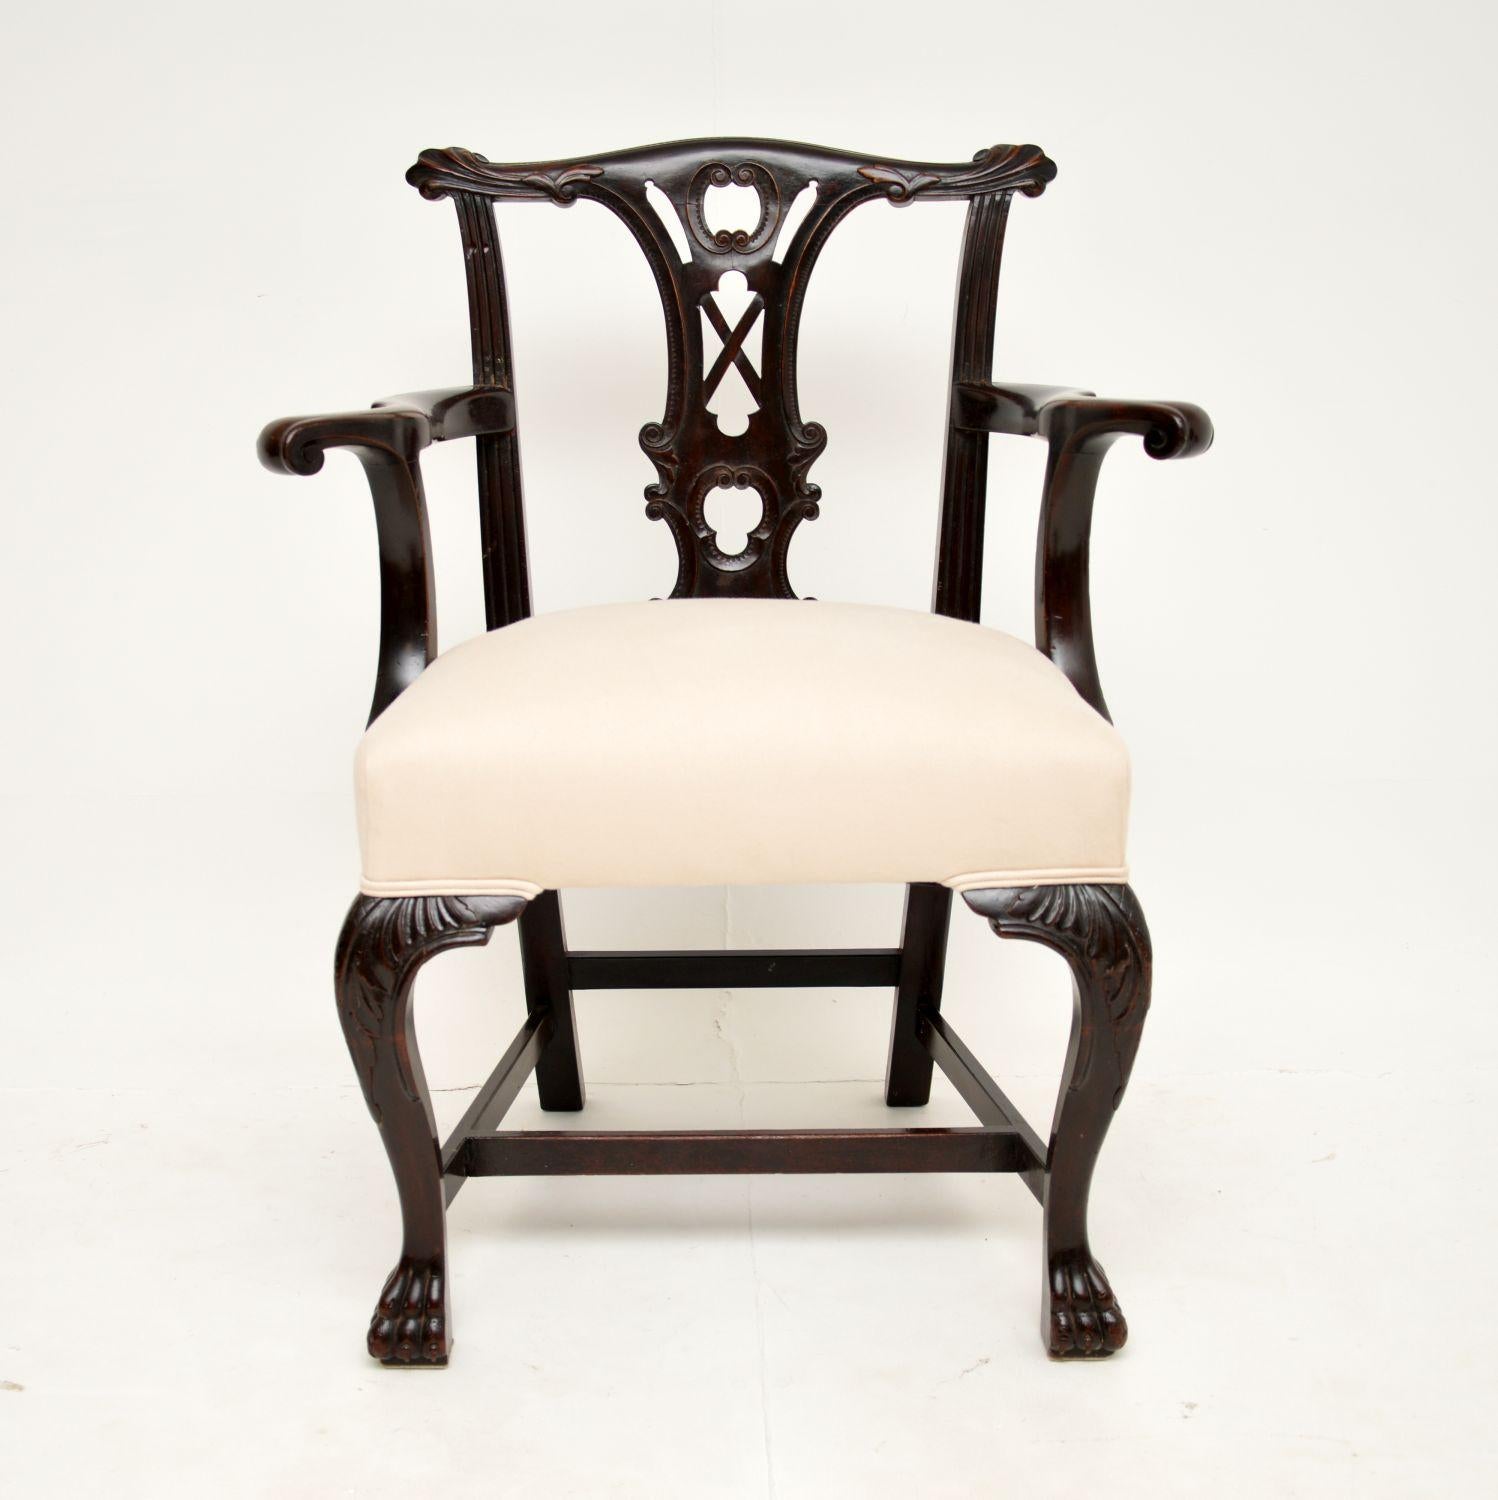 Ein ausgezeichneter georgianischer Sessel im Chippendale-Stil. Dieses sehr schöne Exemplar wurde in England hergestellt und stammt aus der Zeit um 1760-80.

Es ist von absolut fabelhafter Qualität, mit einem sehr kühnen und schön geschnitzten